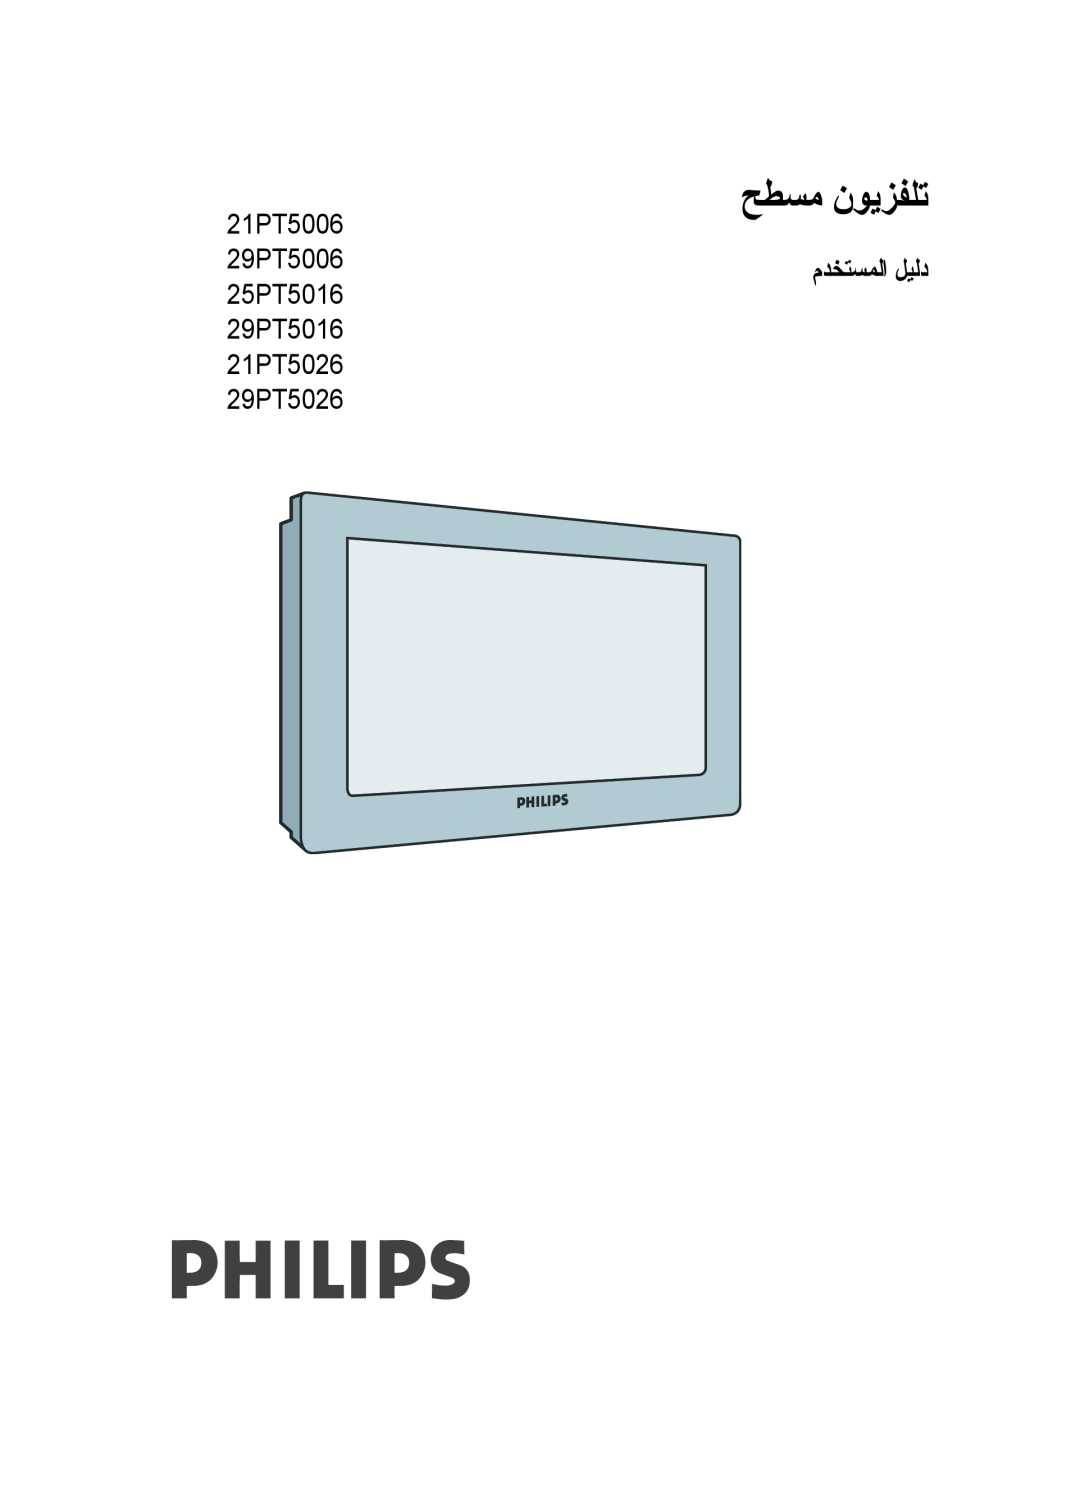 Philips 29PT5016 user manual Real Flat Television, 21PT5006, 29PT5006, 25PT5016, 21PT5026, 29PT5026 